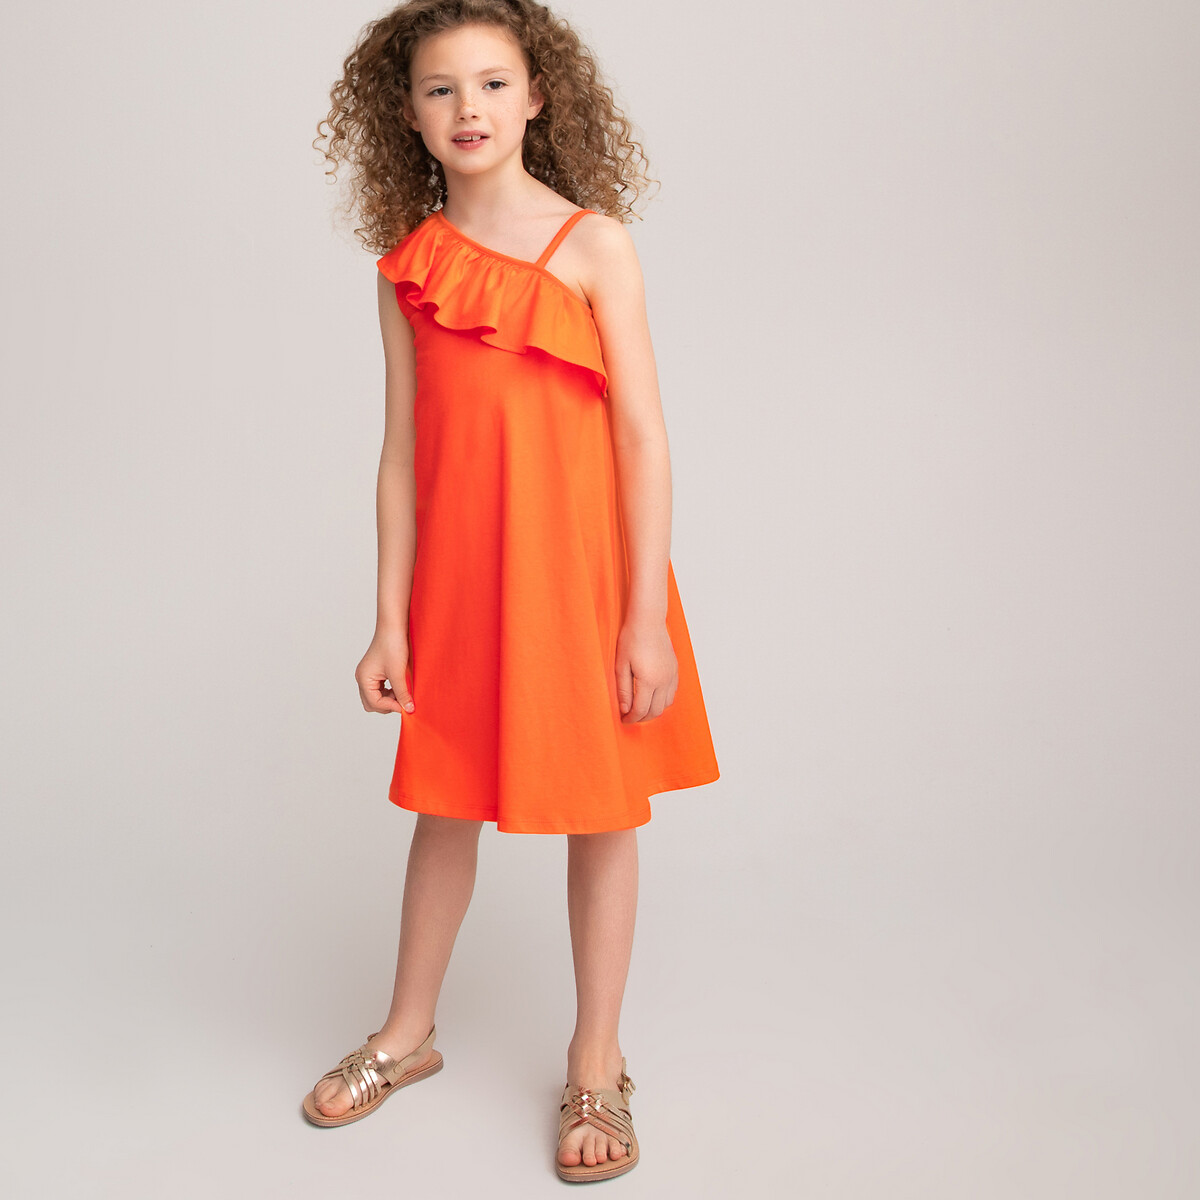 Платье LaRedoute С воланом из биохлопка 3-12 лет 5 лет - 108 см оранжевый, размер 5 лет - 108 см - фото 2